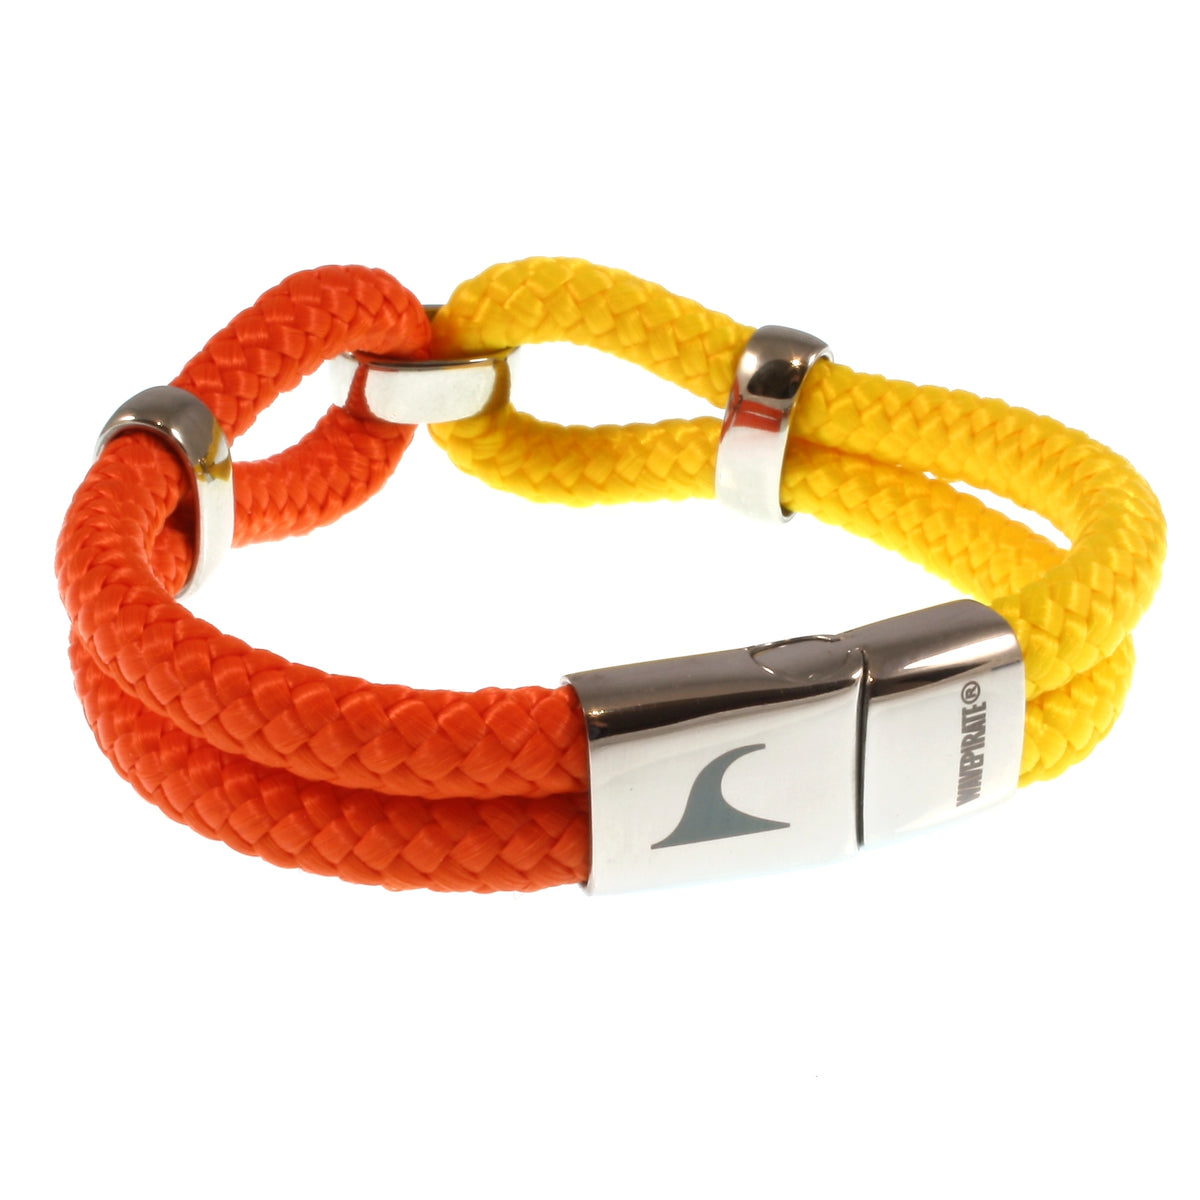 Damen-Segeltau-armband-roma-gelb-orange-geflochten-Edelstahlverschluss-hinten-wavepirate-shop-st